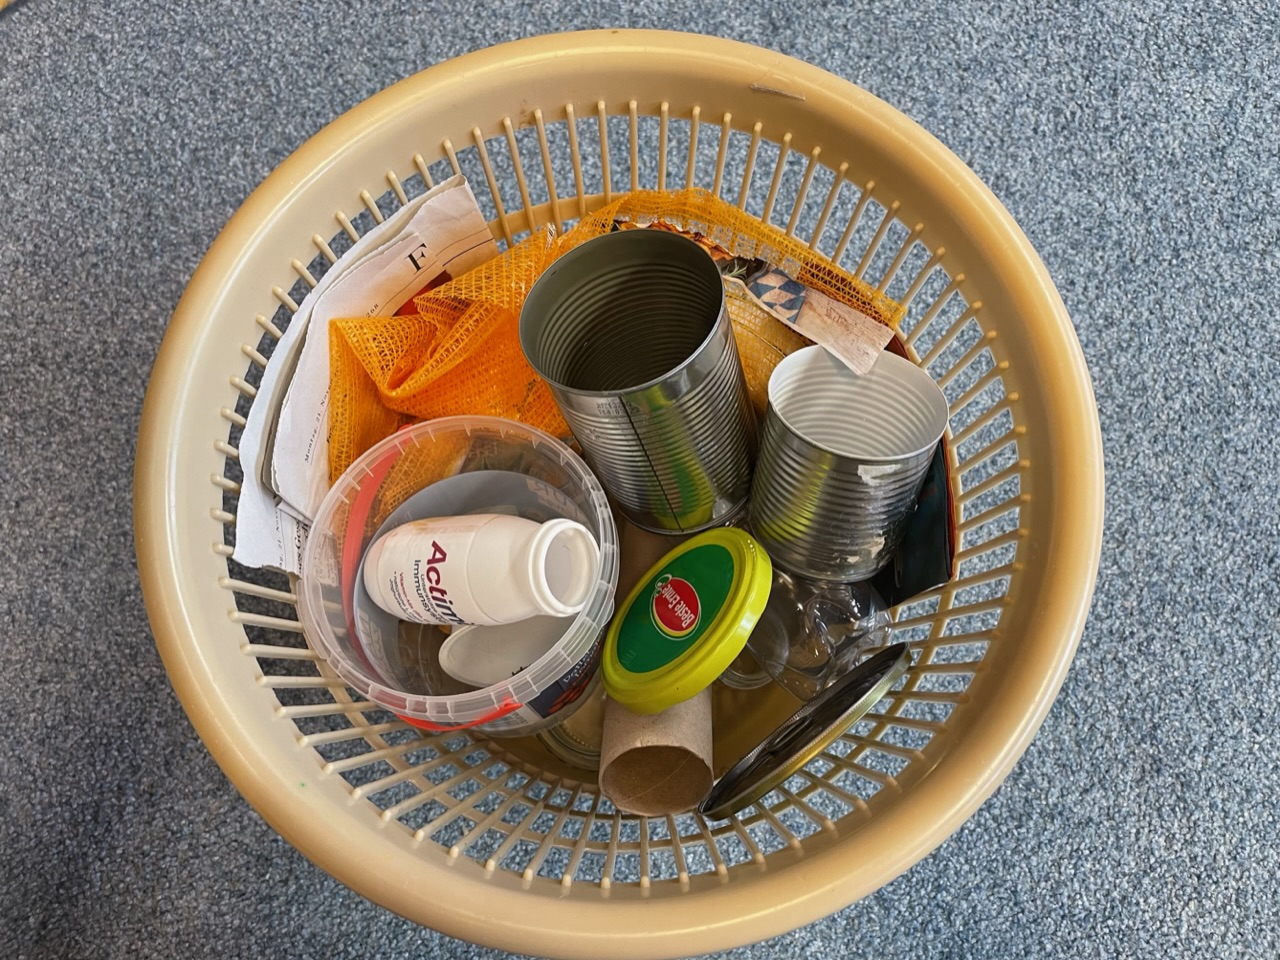 Bild zum Schritt 16 für das Bastel- und DIY-Abenteuer für Kinder: 'Nun könnt ihr allen Müll in einen Abfalleimer geben.'